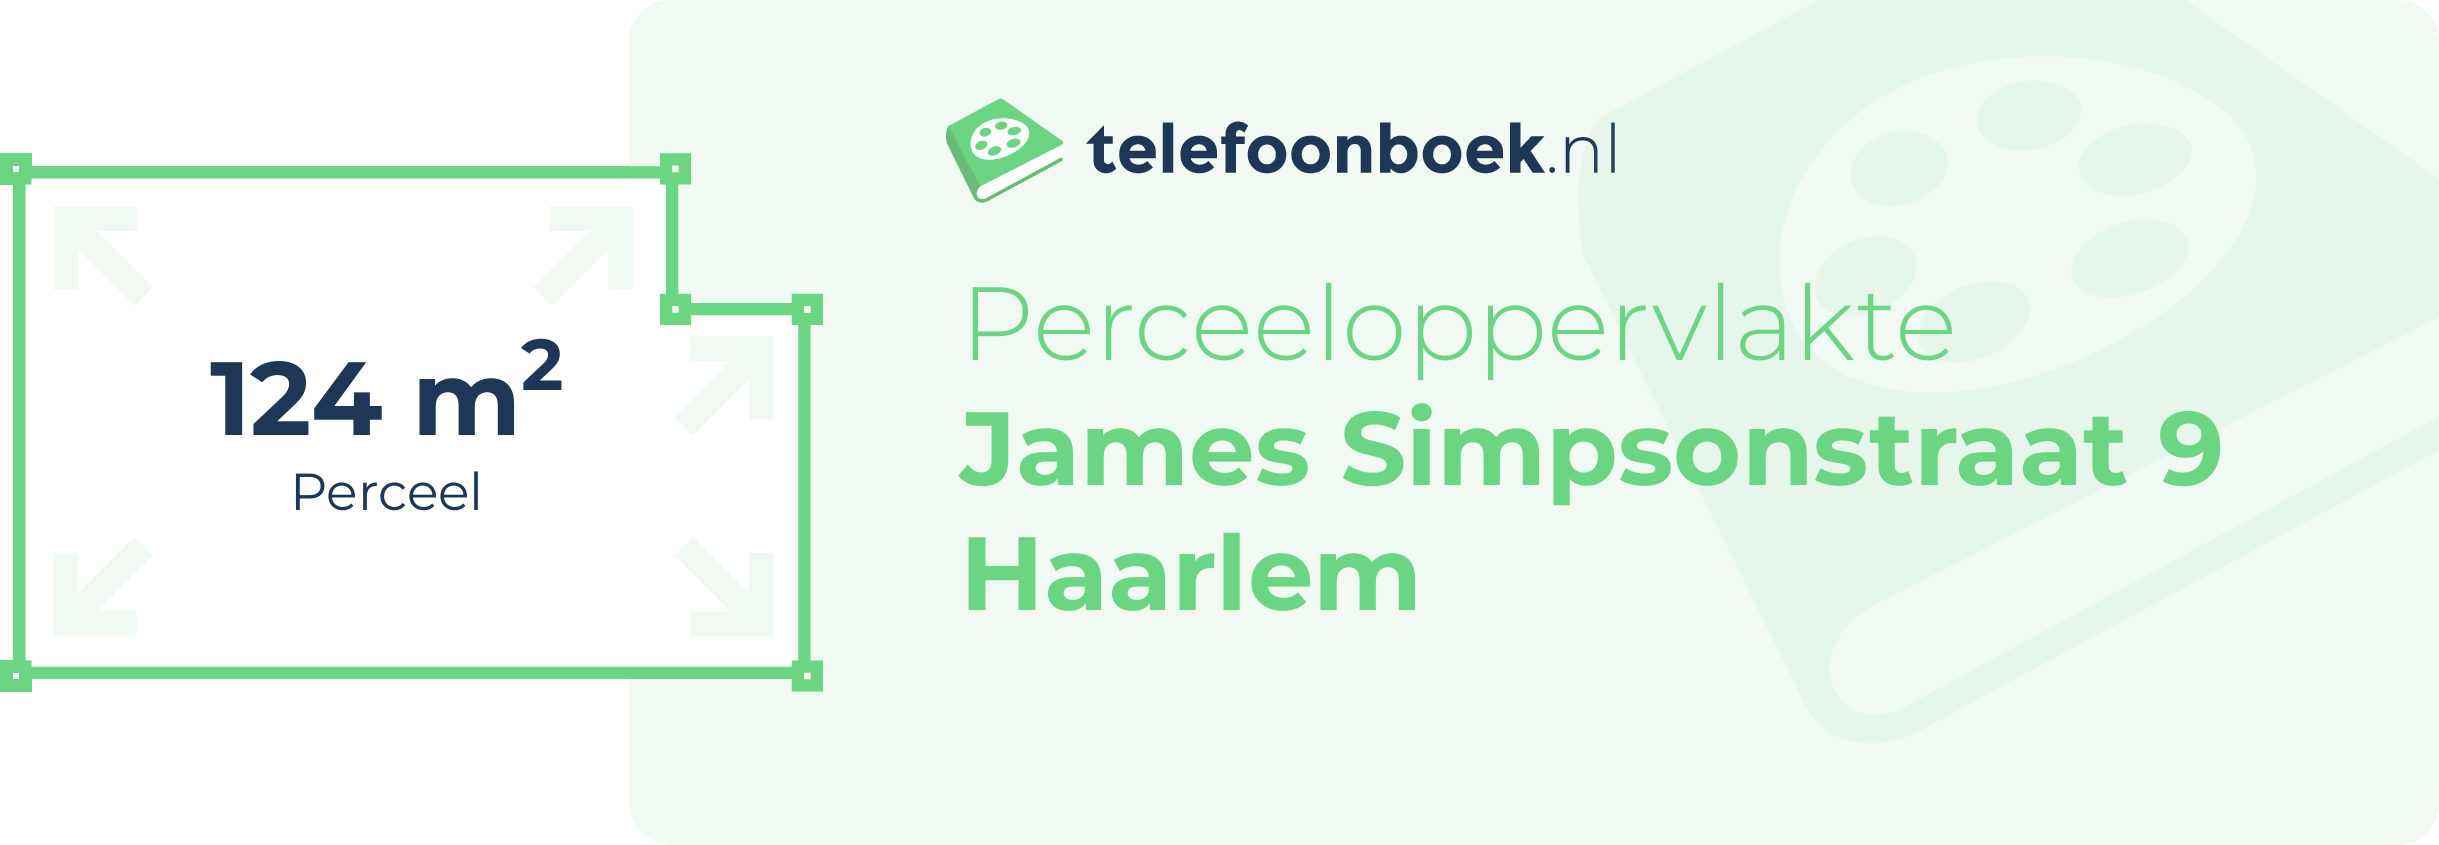 Perceeloppervlakte James Simpsonstraat 9 Haarlem